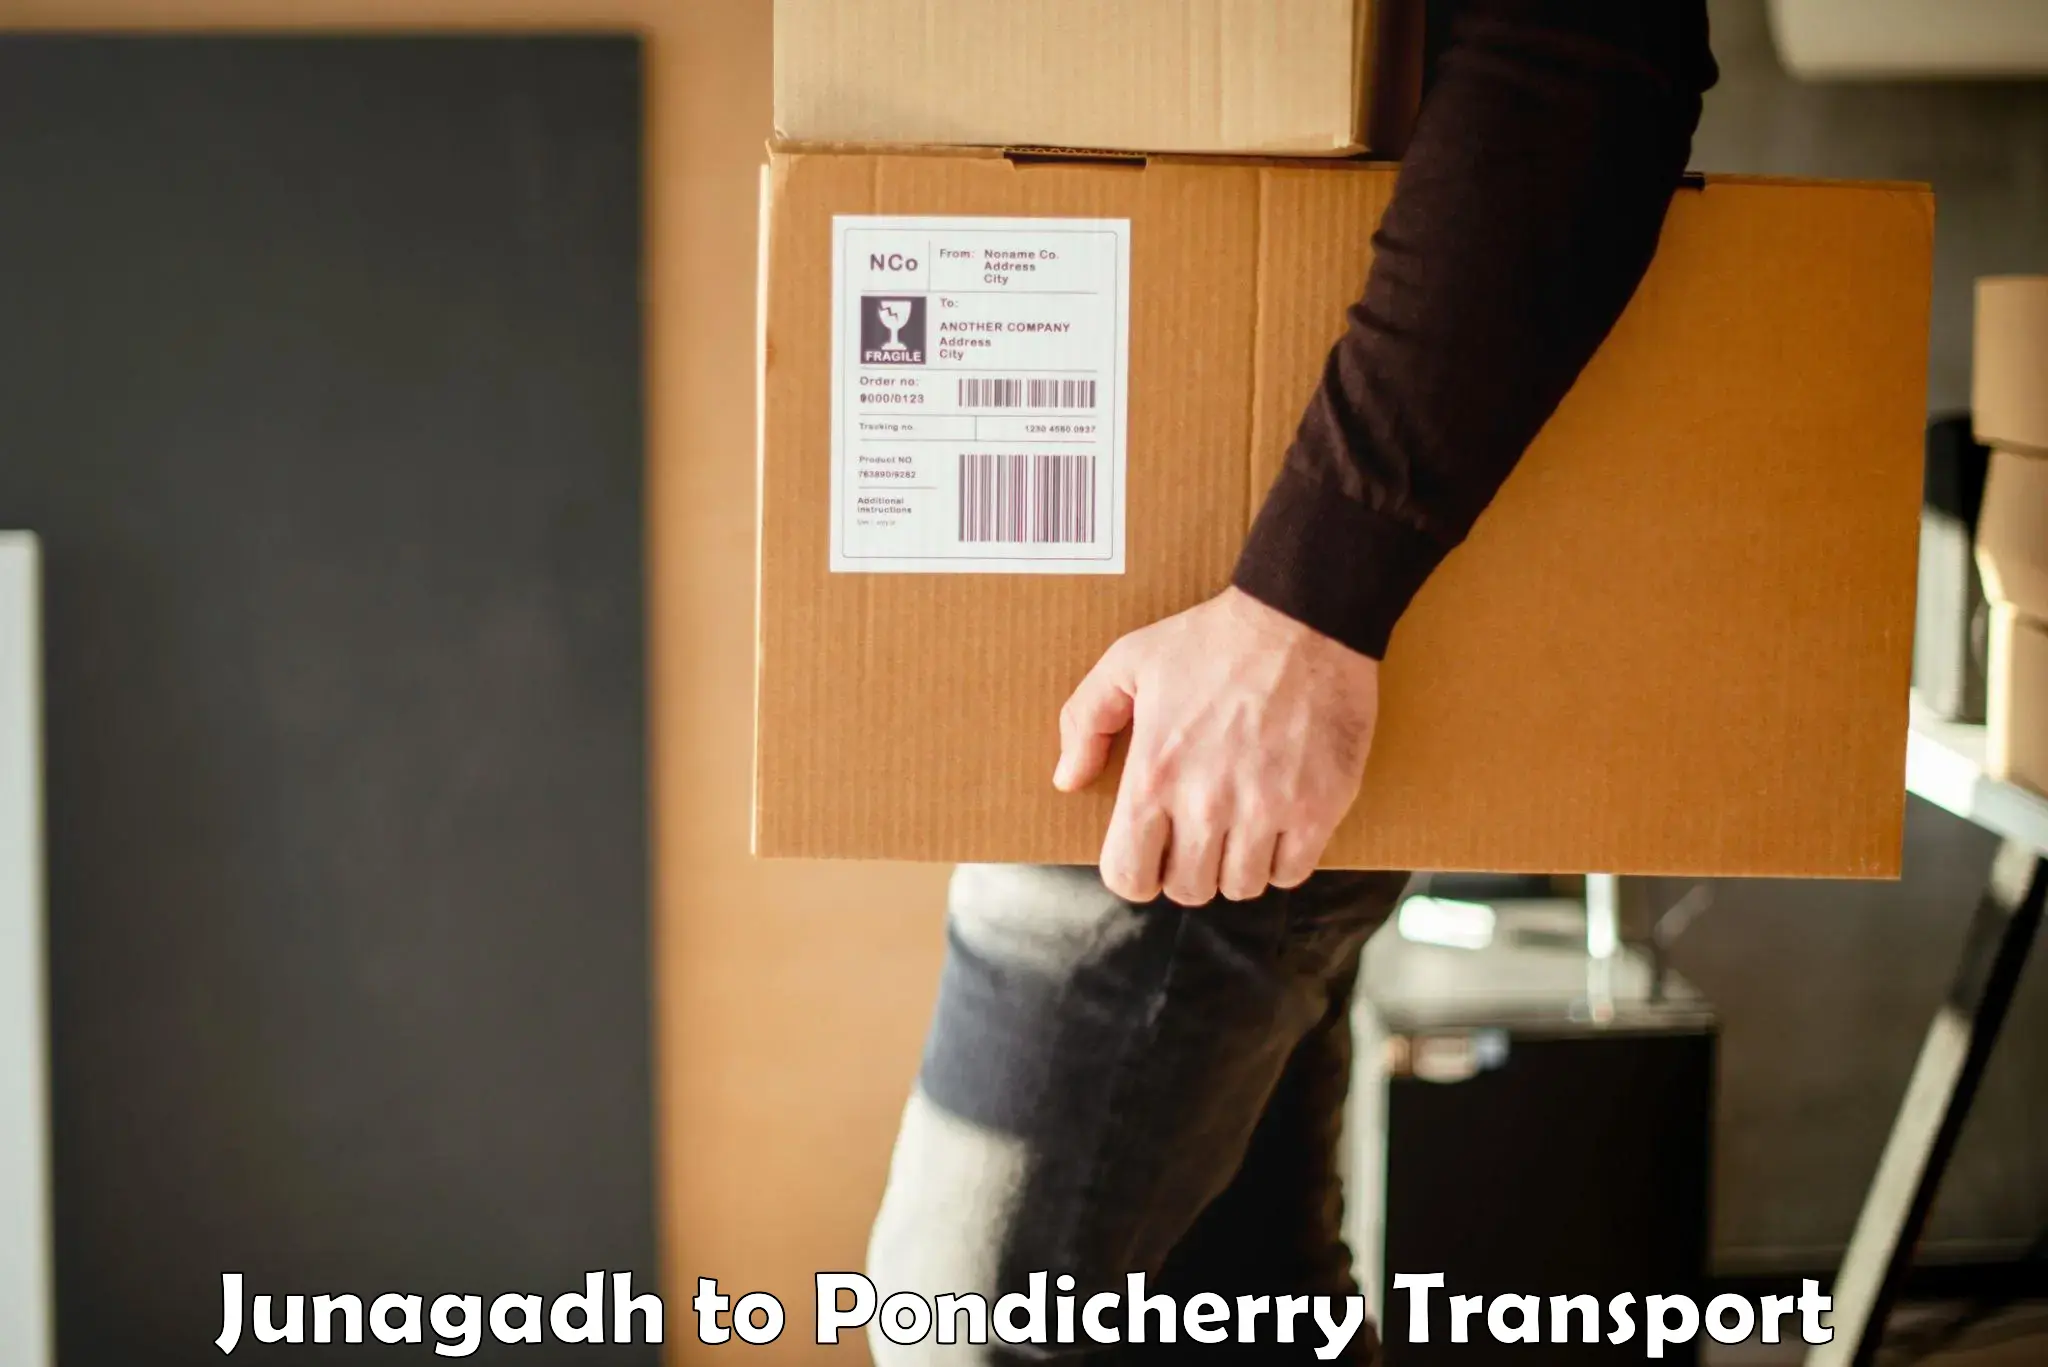 Transport in sharing Junagadh to Pondicherry